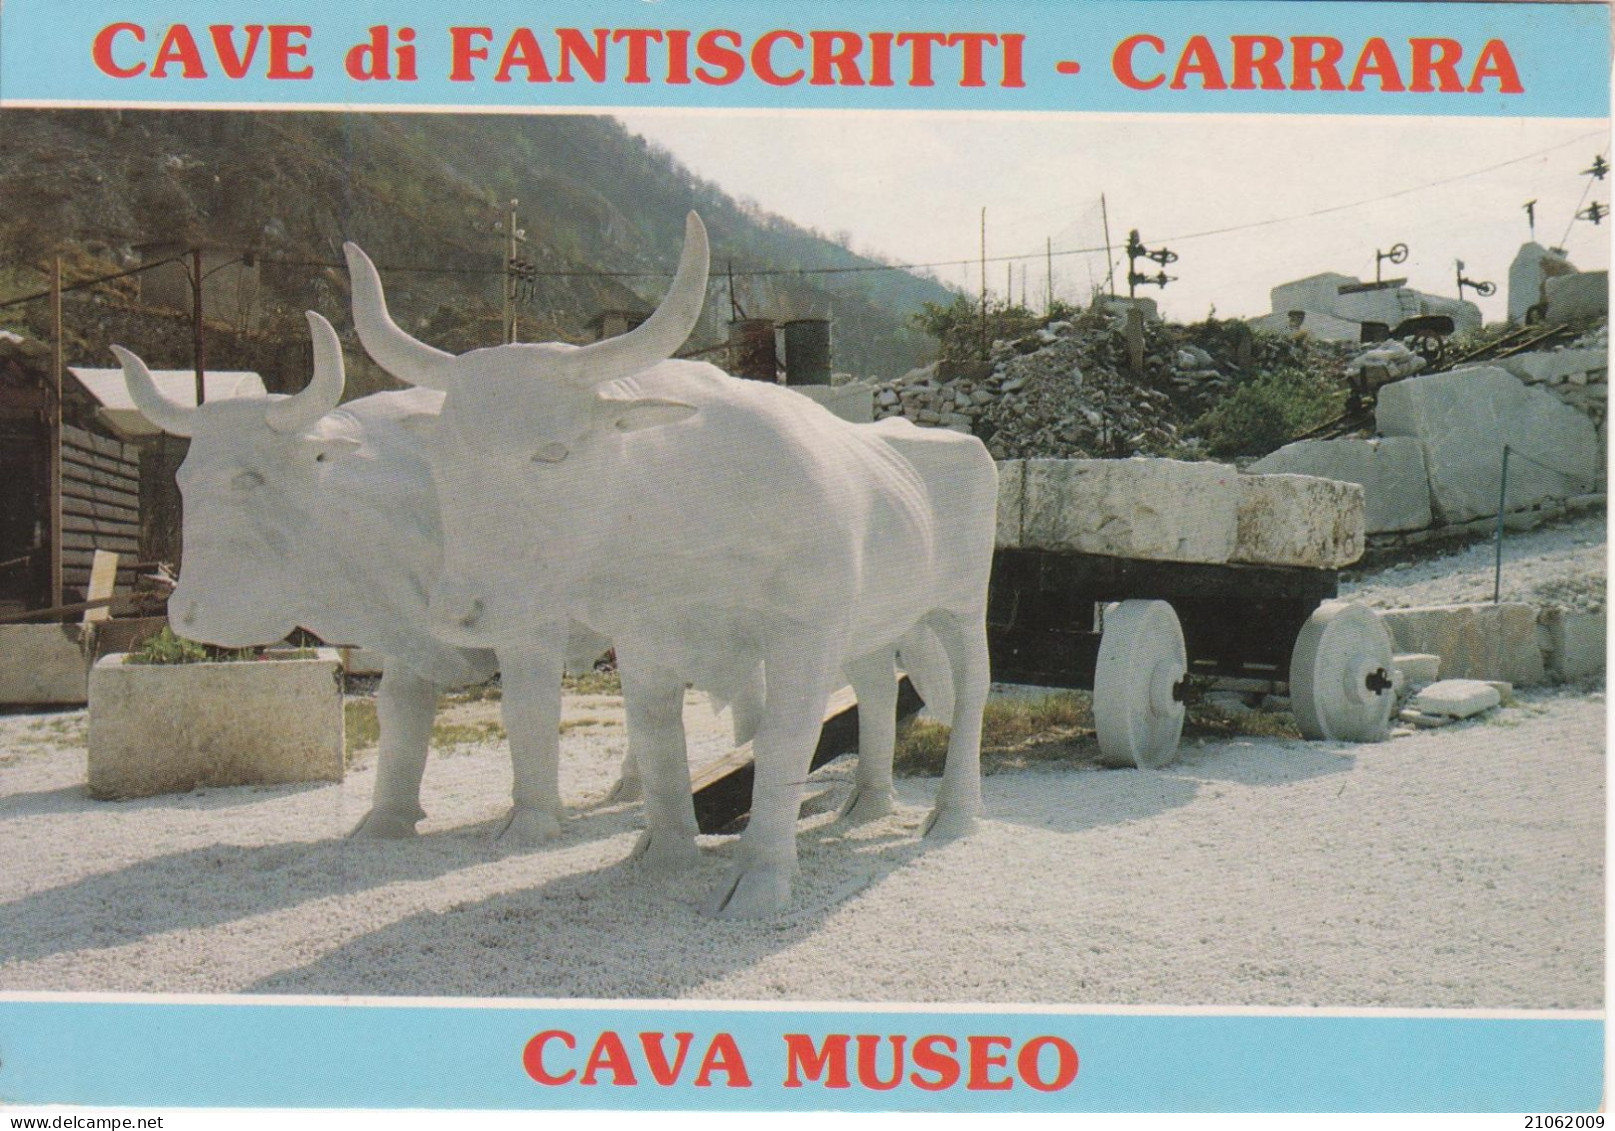 CARRARA - FANTASCRITTI - CAVA MUSEO DEL MARMO DI WALTER DANESI - "BUOI IN MARMO", SCULTORE BOUTROS ROMHEIN - V1991 - Carrara